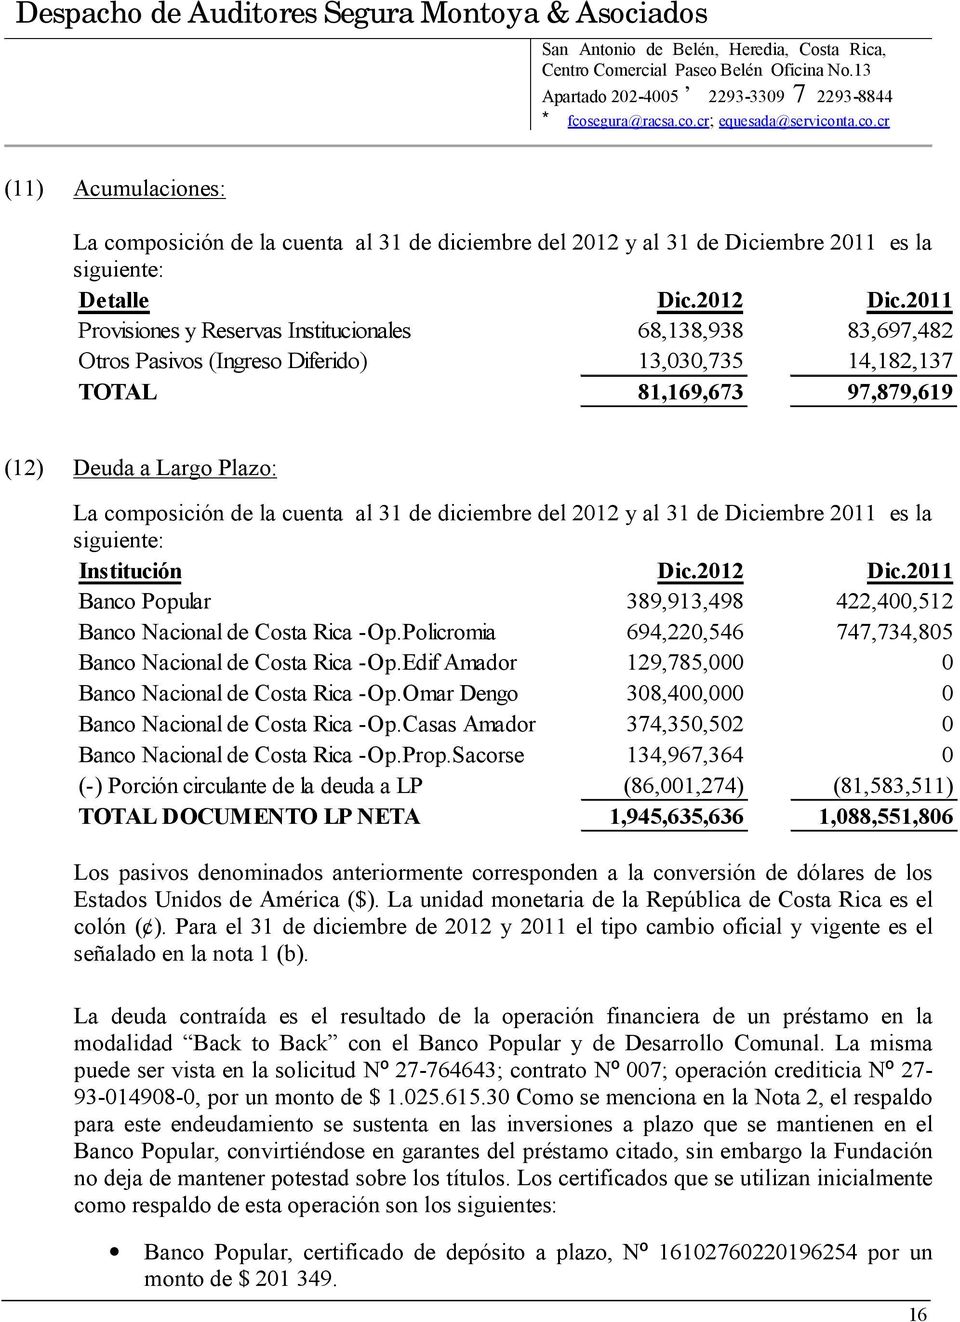 cuenta al 31 de diciembre del 2012 y al 31 de Diciembre 2011 es la siguiente: Institución Dic.2012 Dic.2011 Banco Popular 389,913,498 422,400,512 Banco Nacional de Costa Rica -Op.